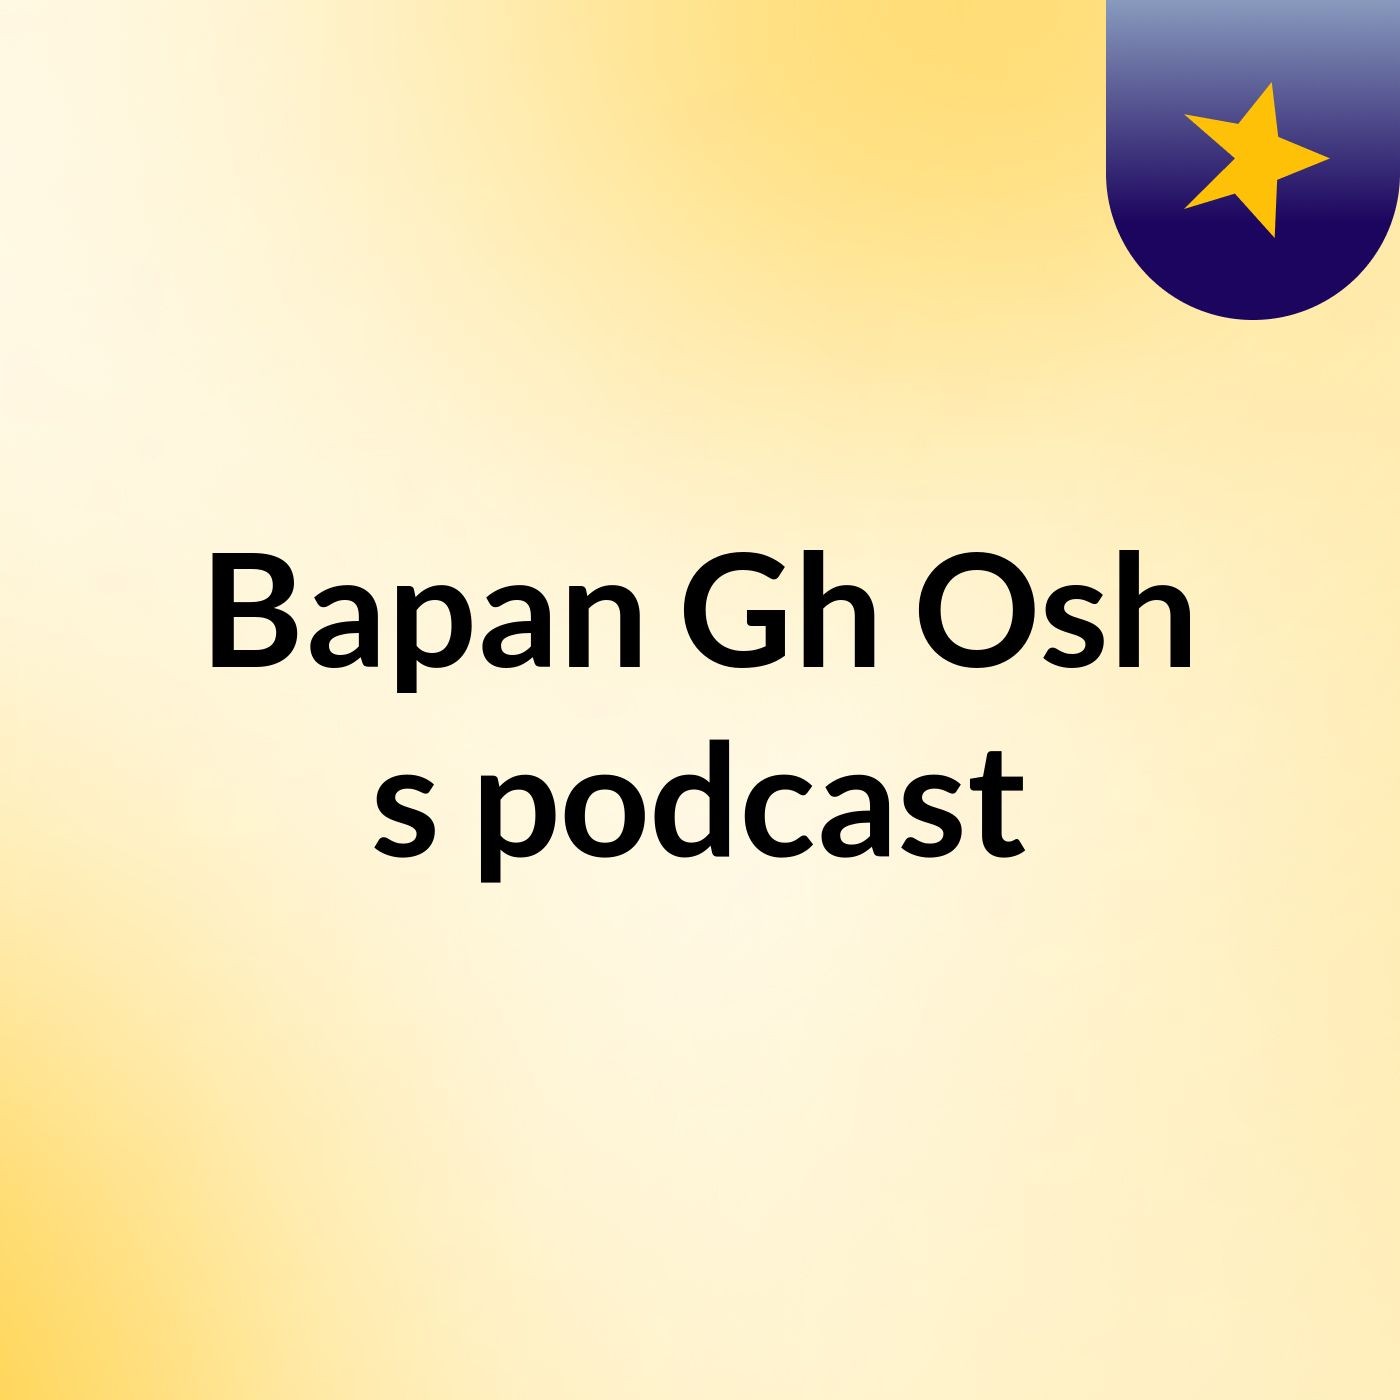 Bapan Gh Osh's podcast